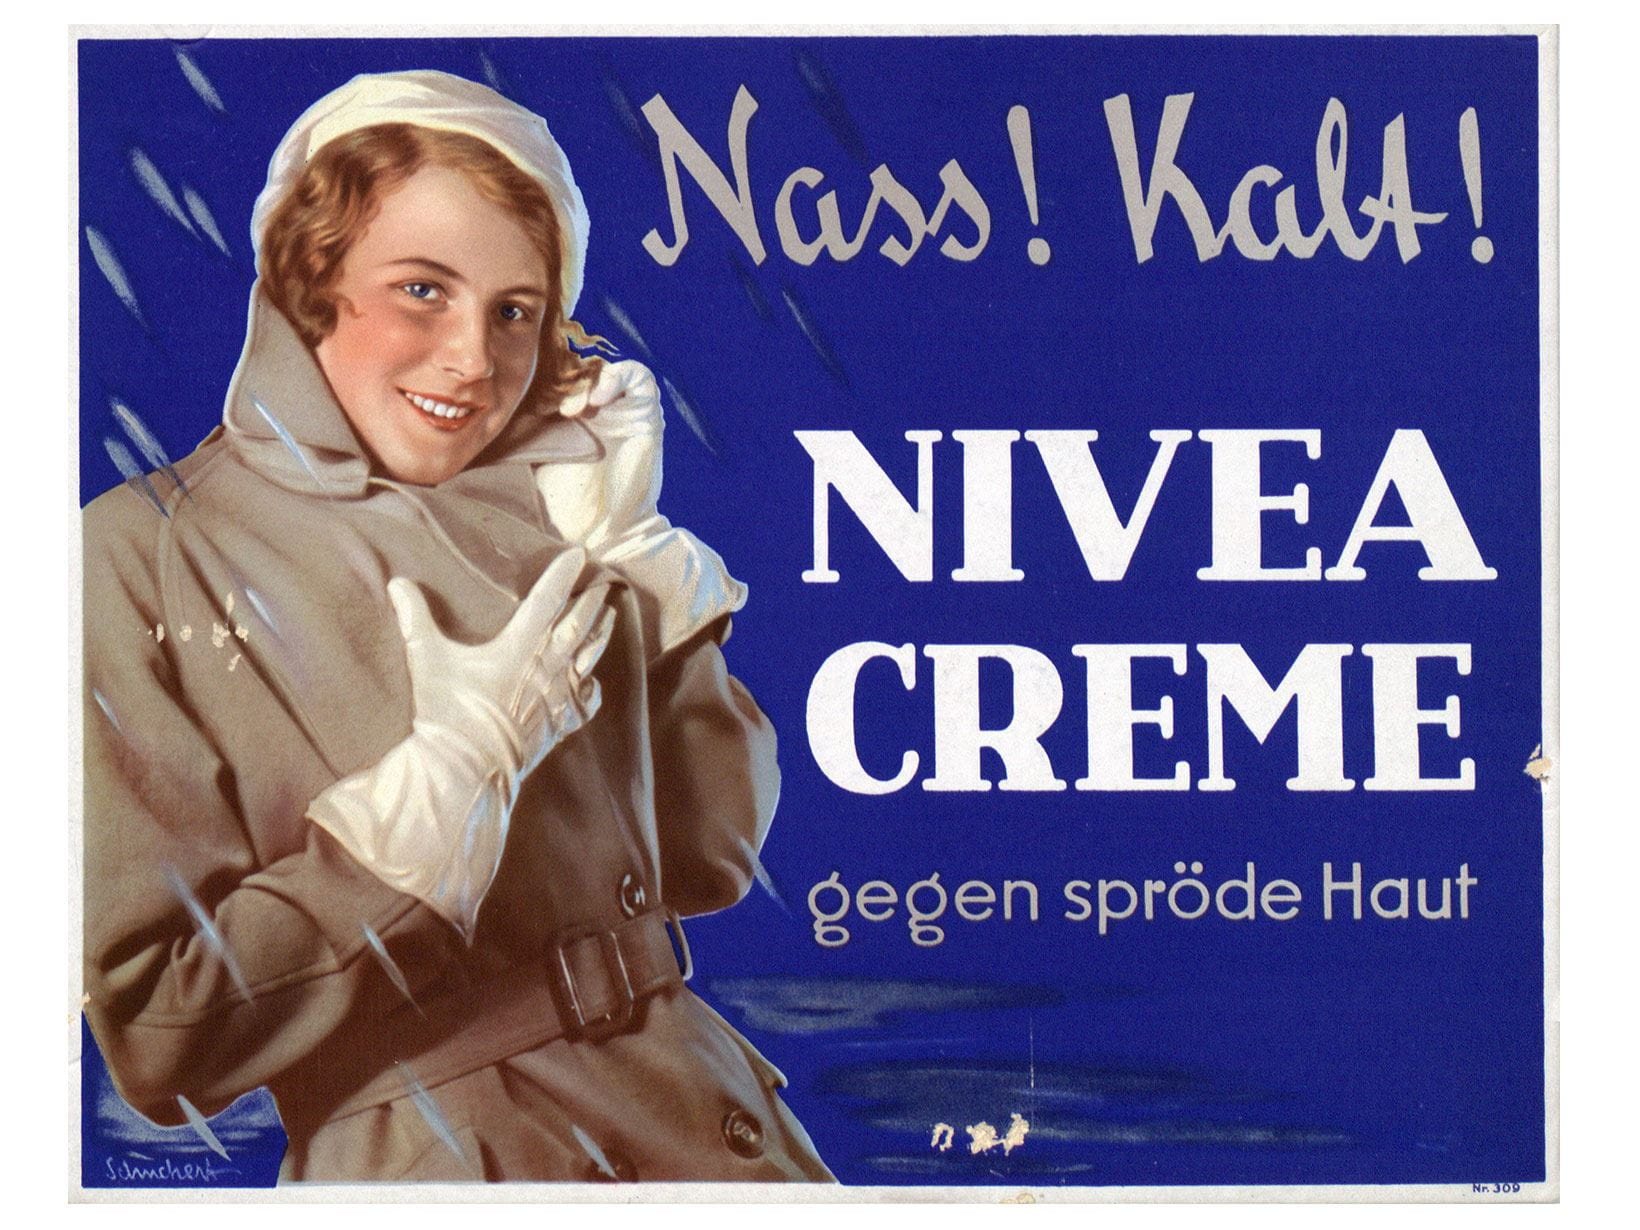 Даже в дождь и в холод NIVEA нежно защищает вашу кожу. Рекламный плакат, 1932 г.